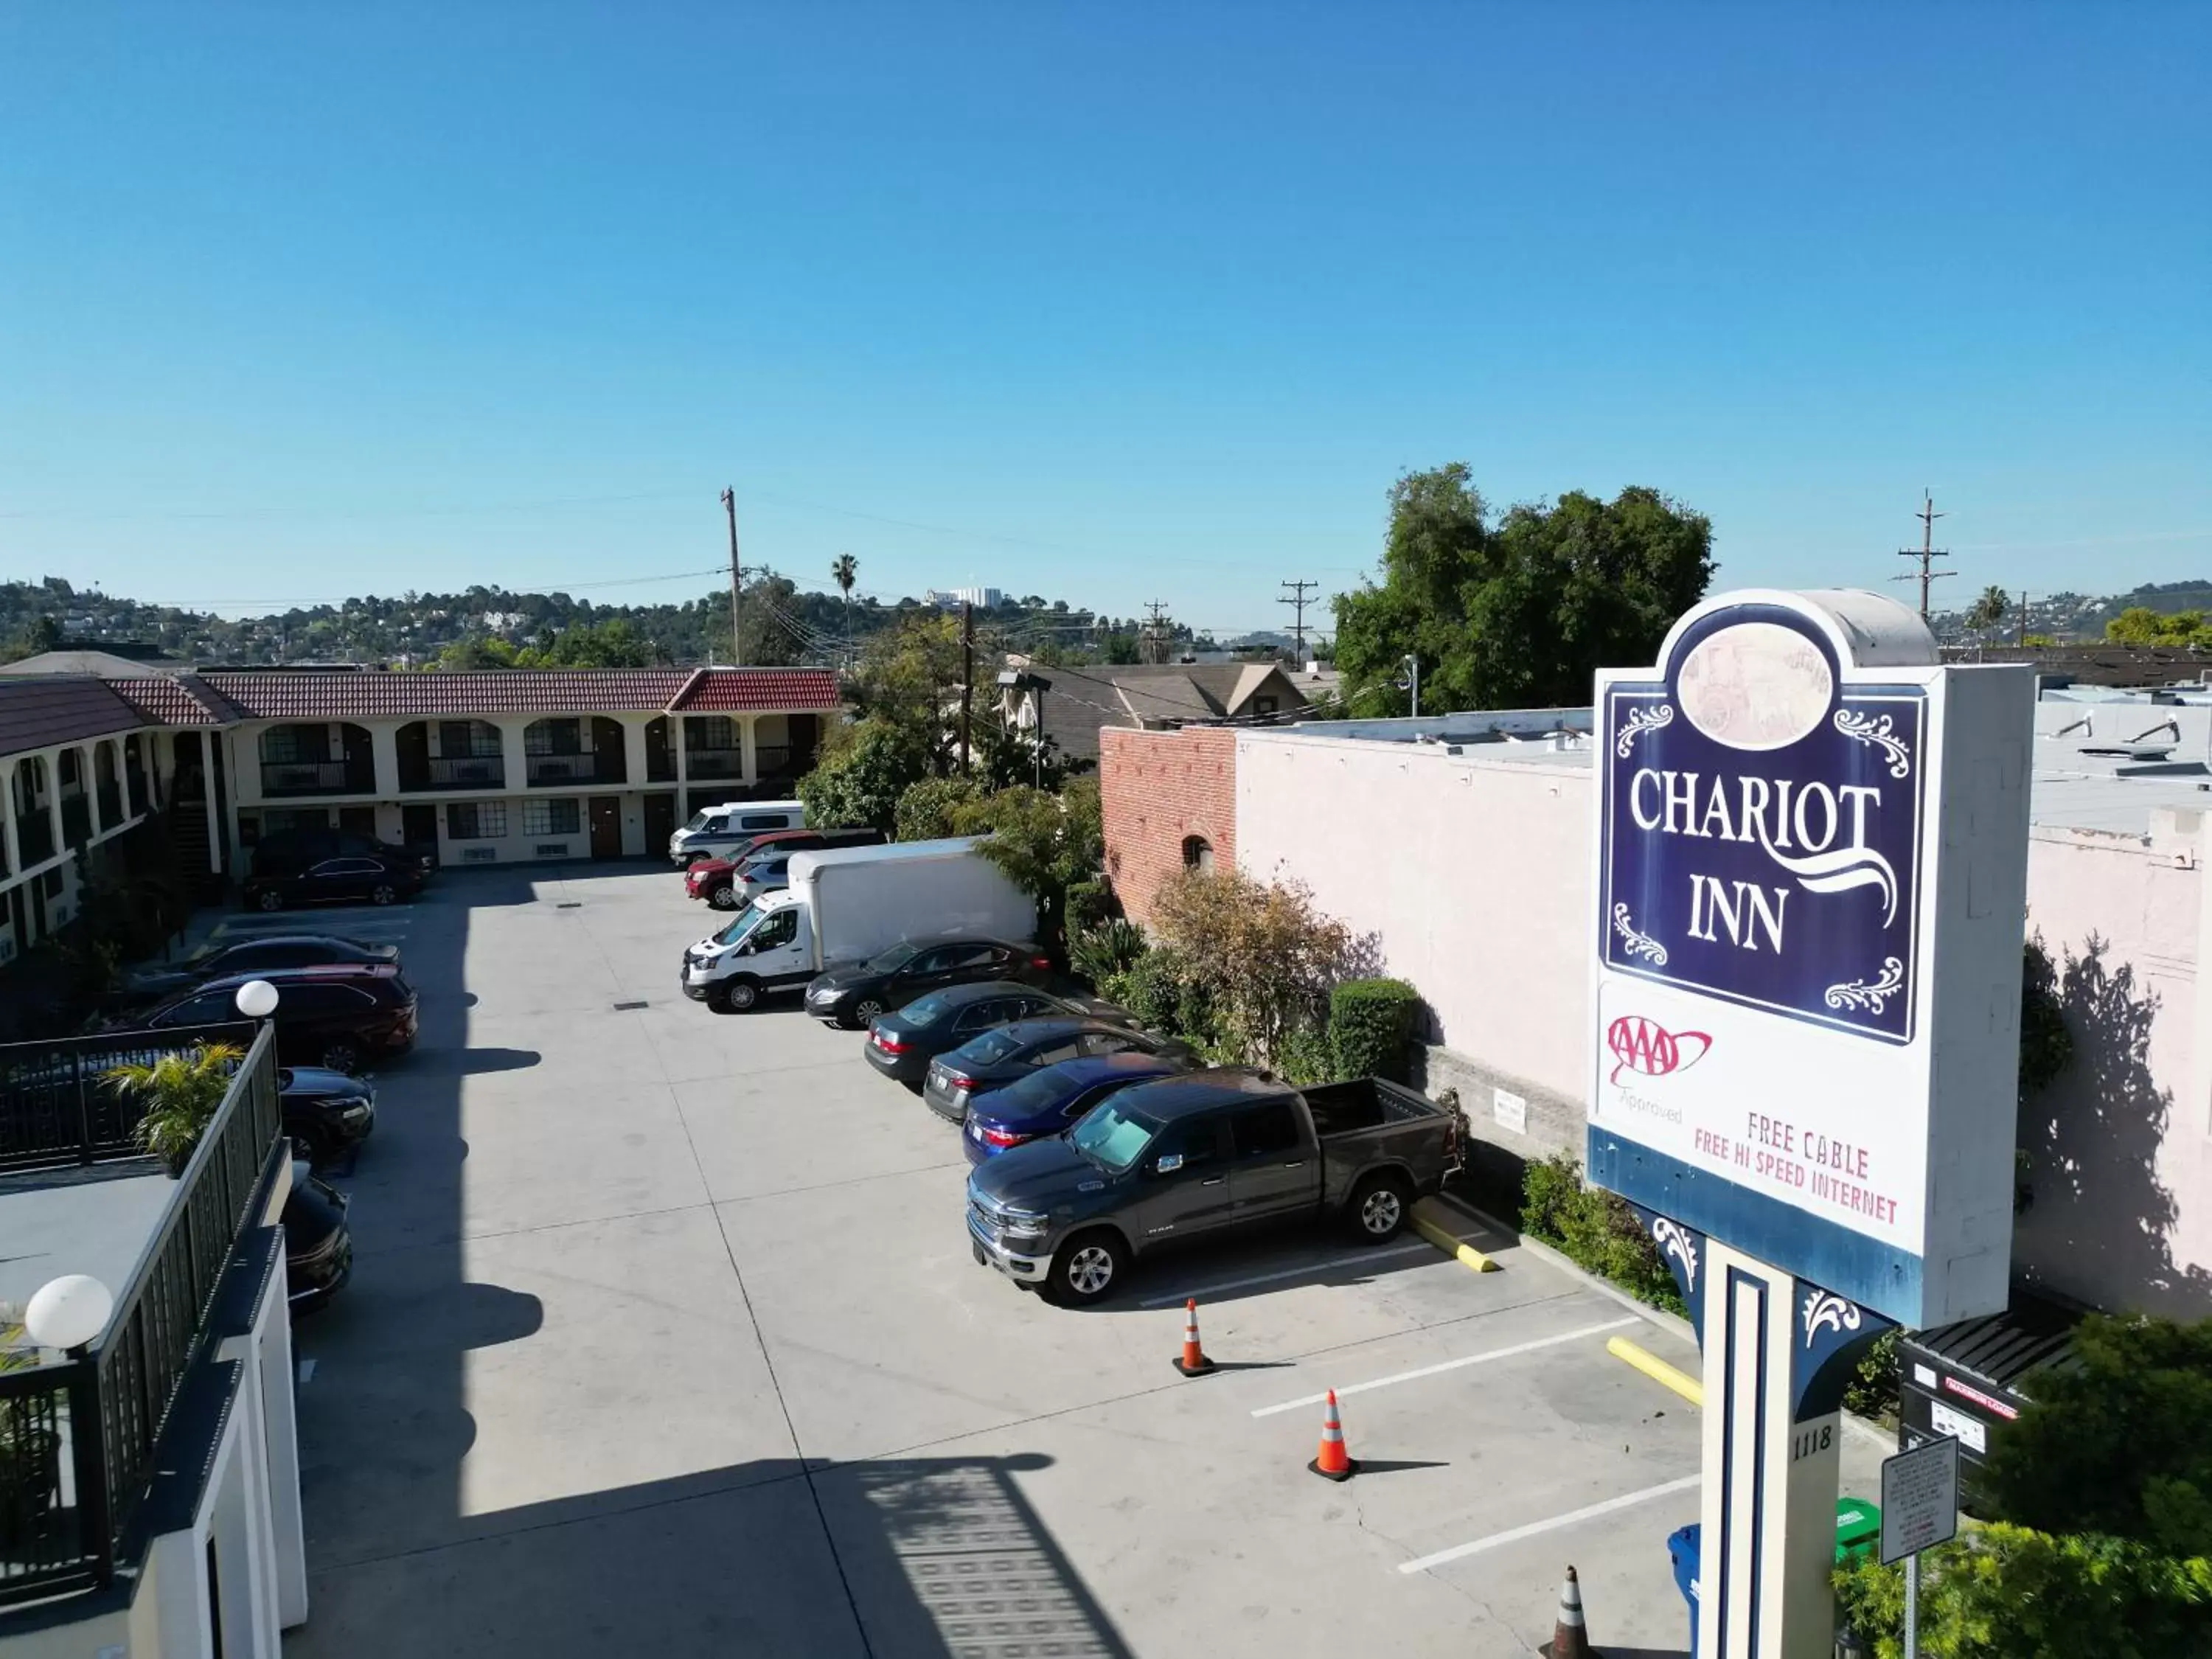 Property building in Chariot Inn Glendale - Pasadena